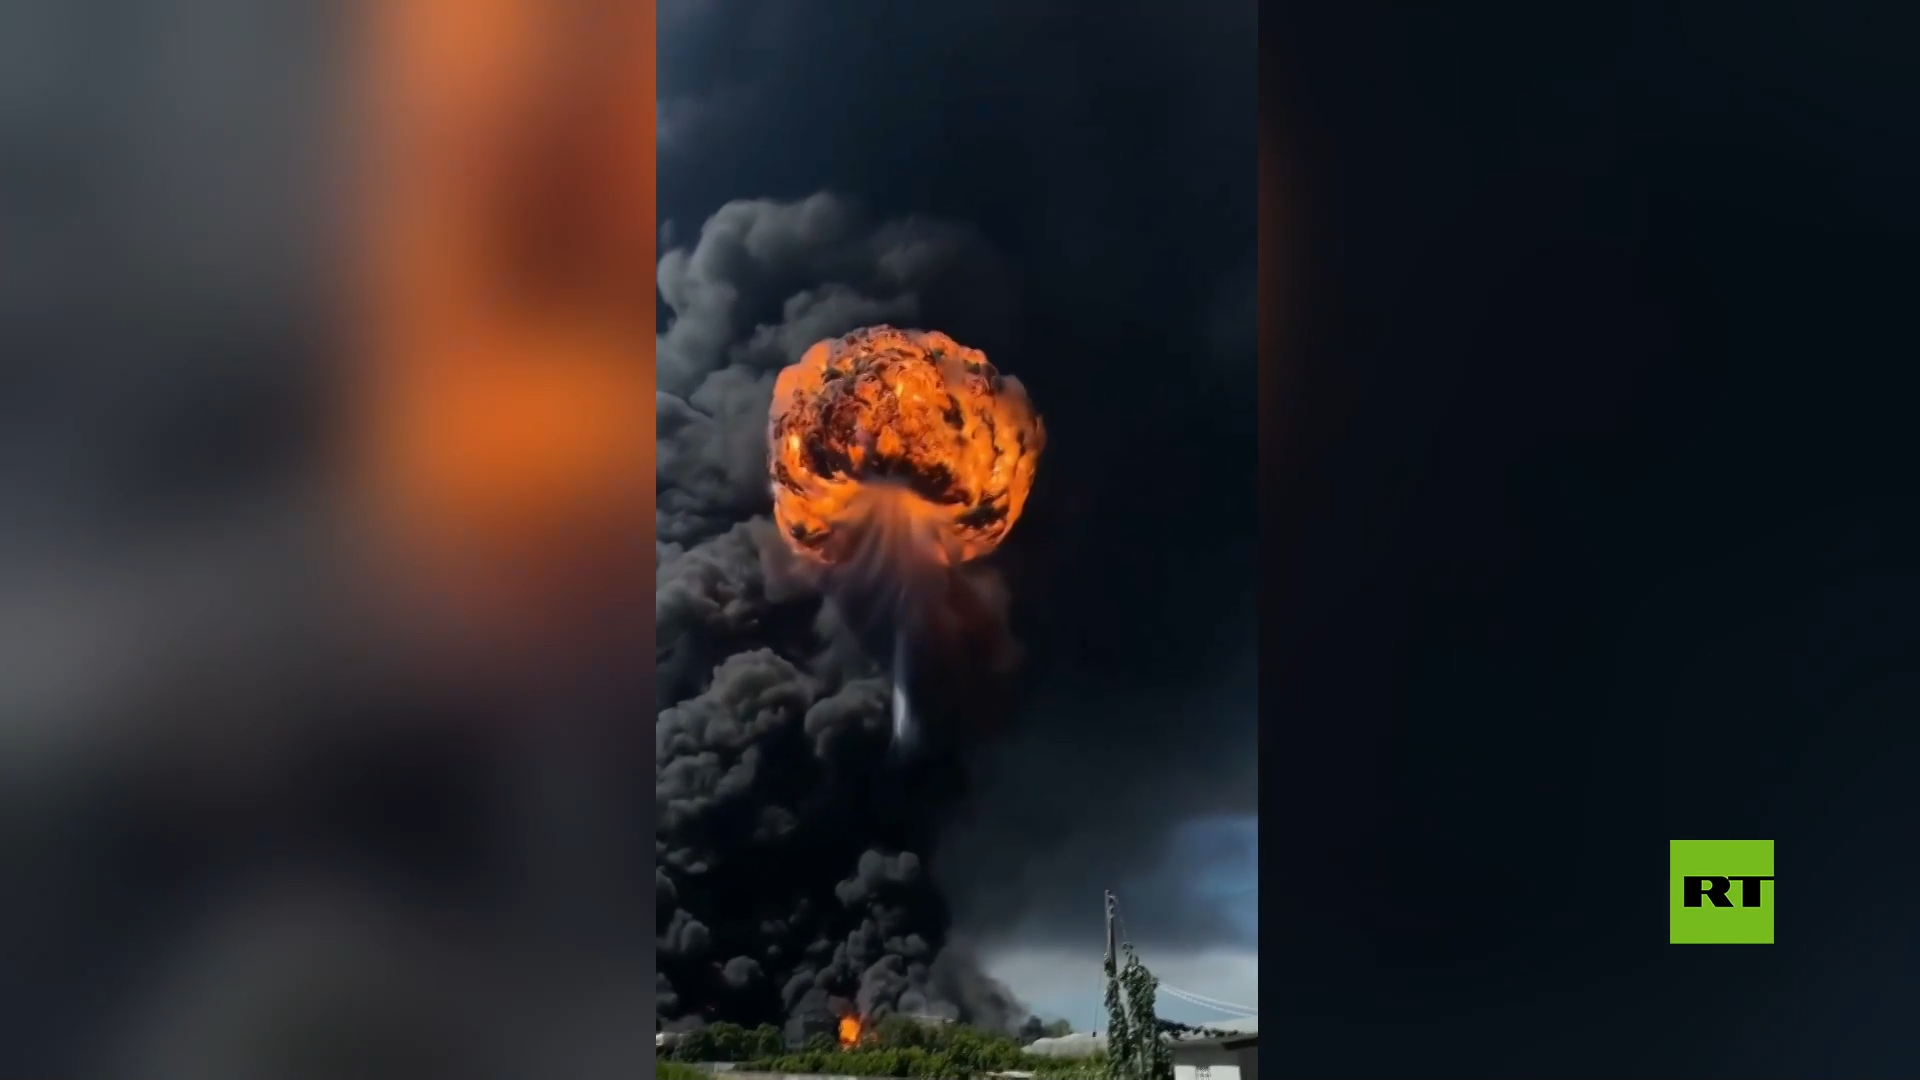 كرة نارية ضخمة! .. لحظة انفجار في مصنع في تايوان